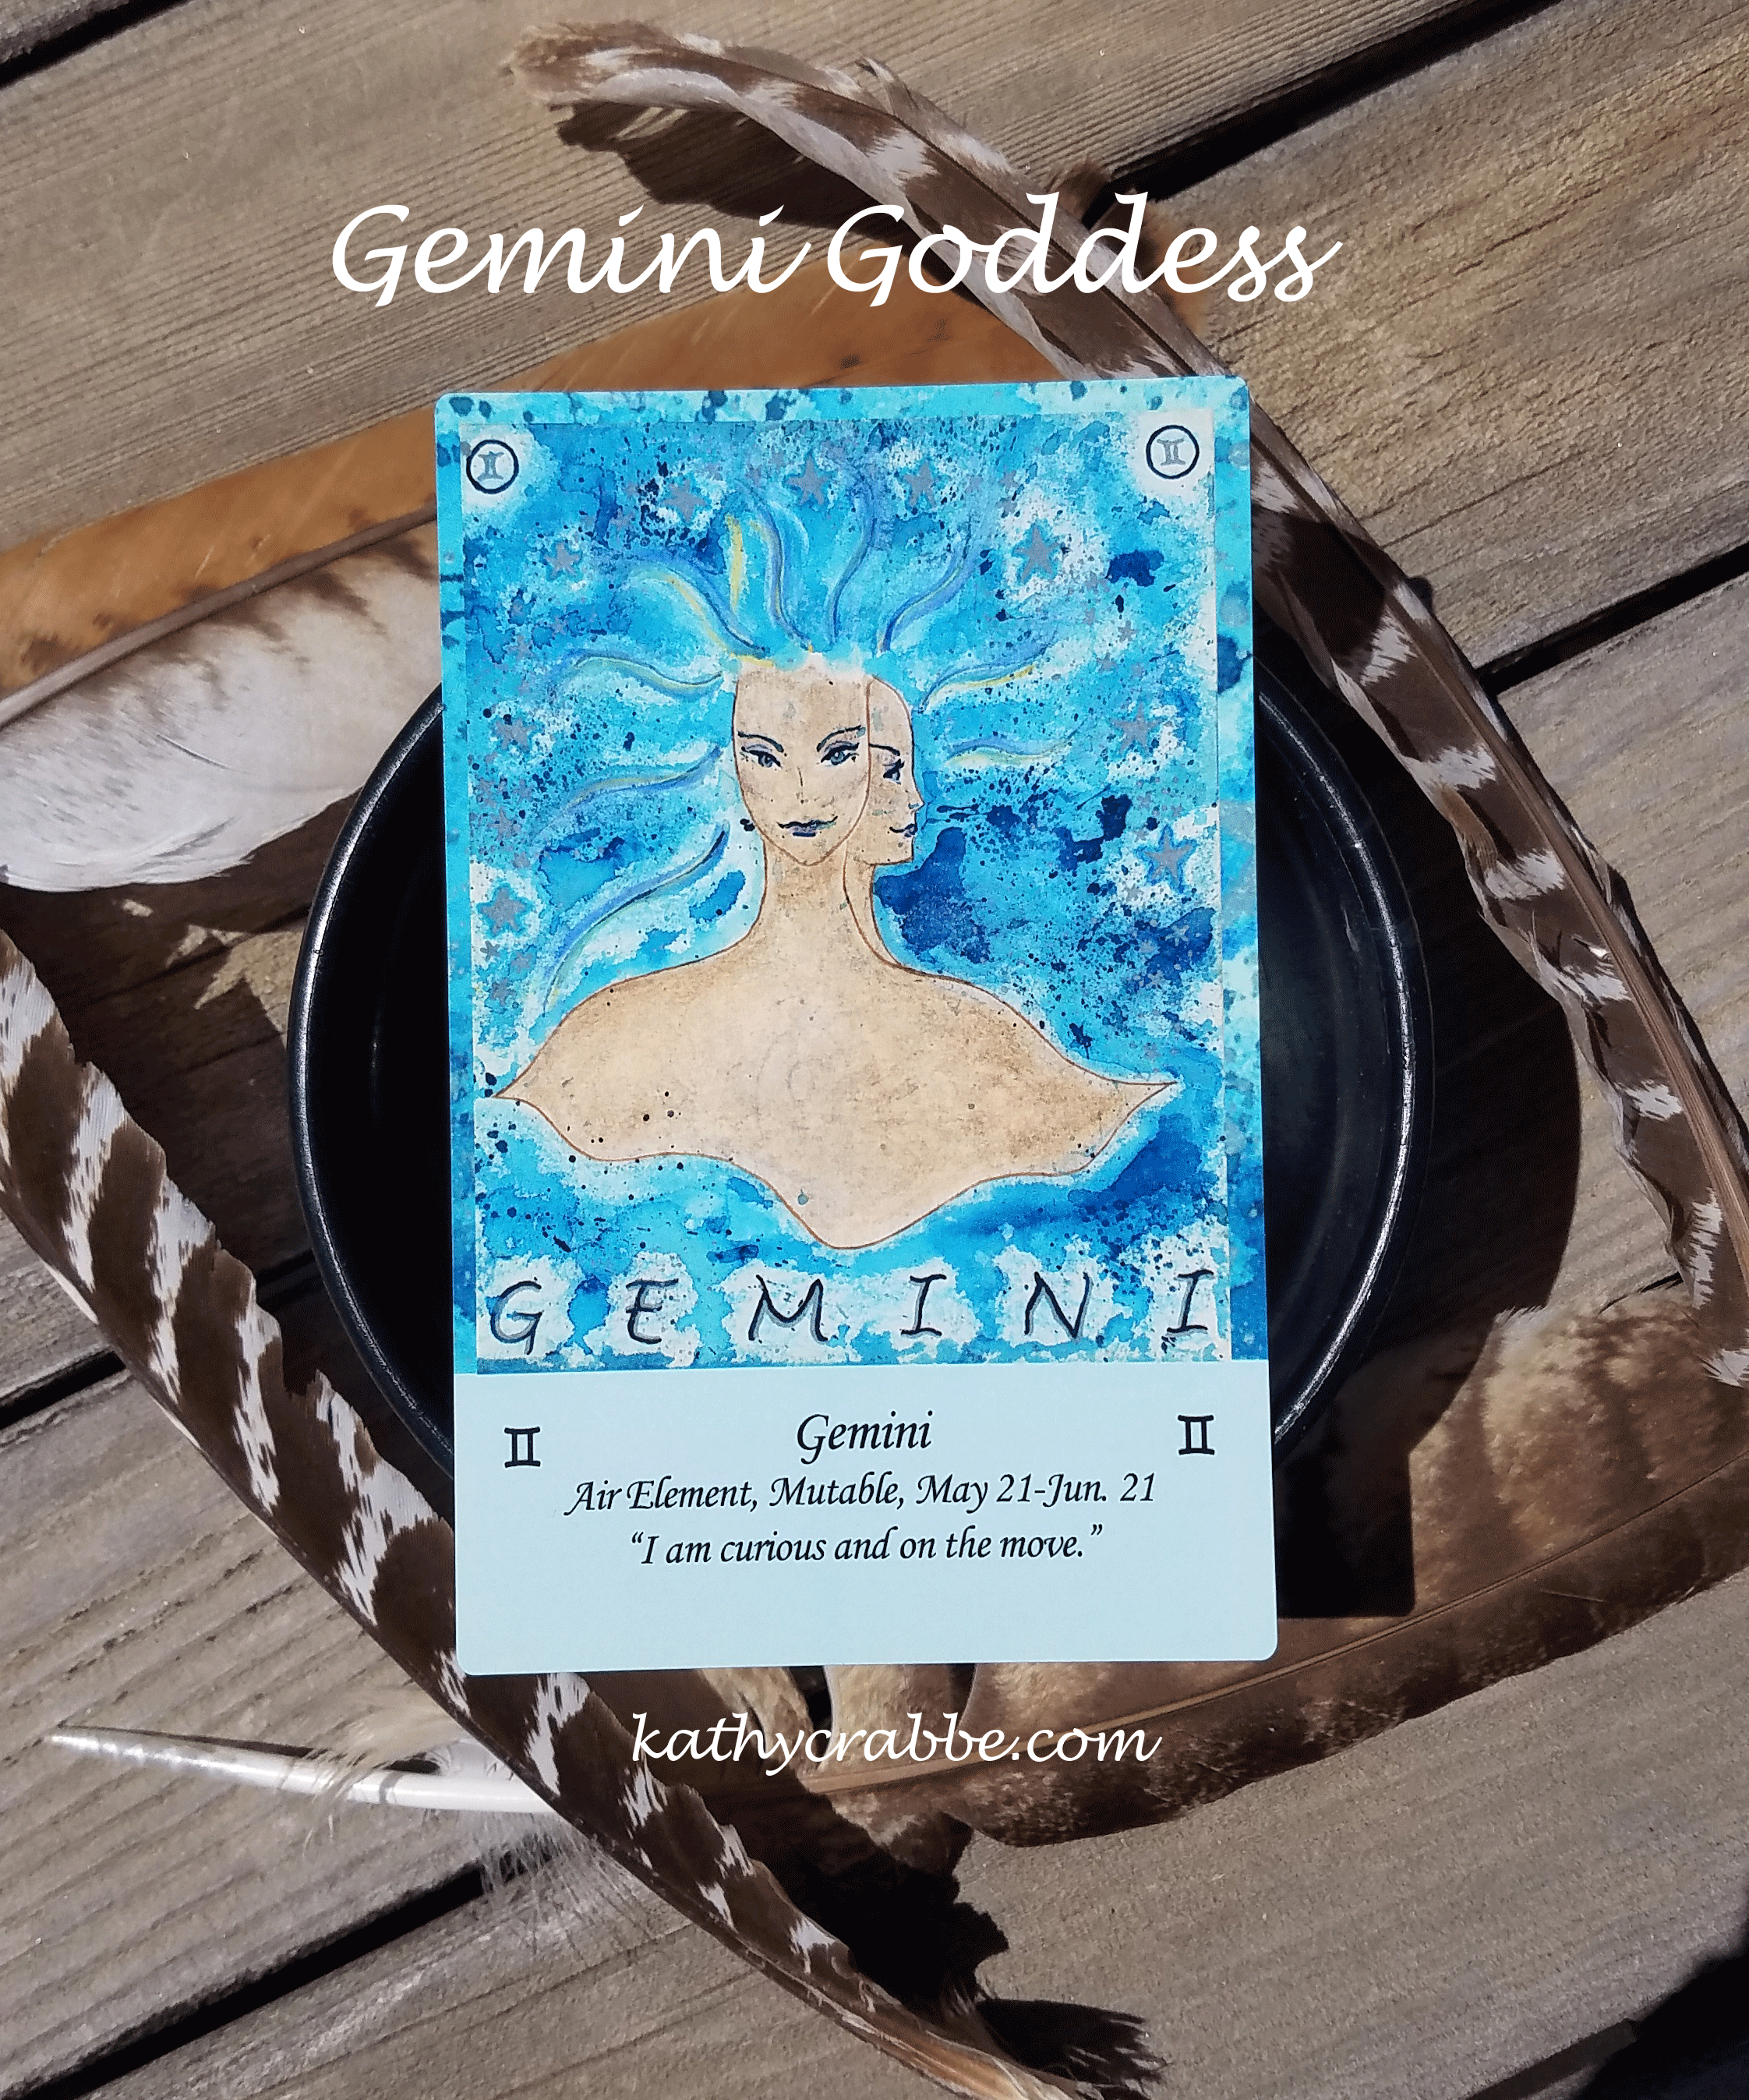 Gemini as a goddess